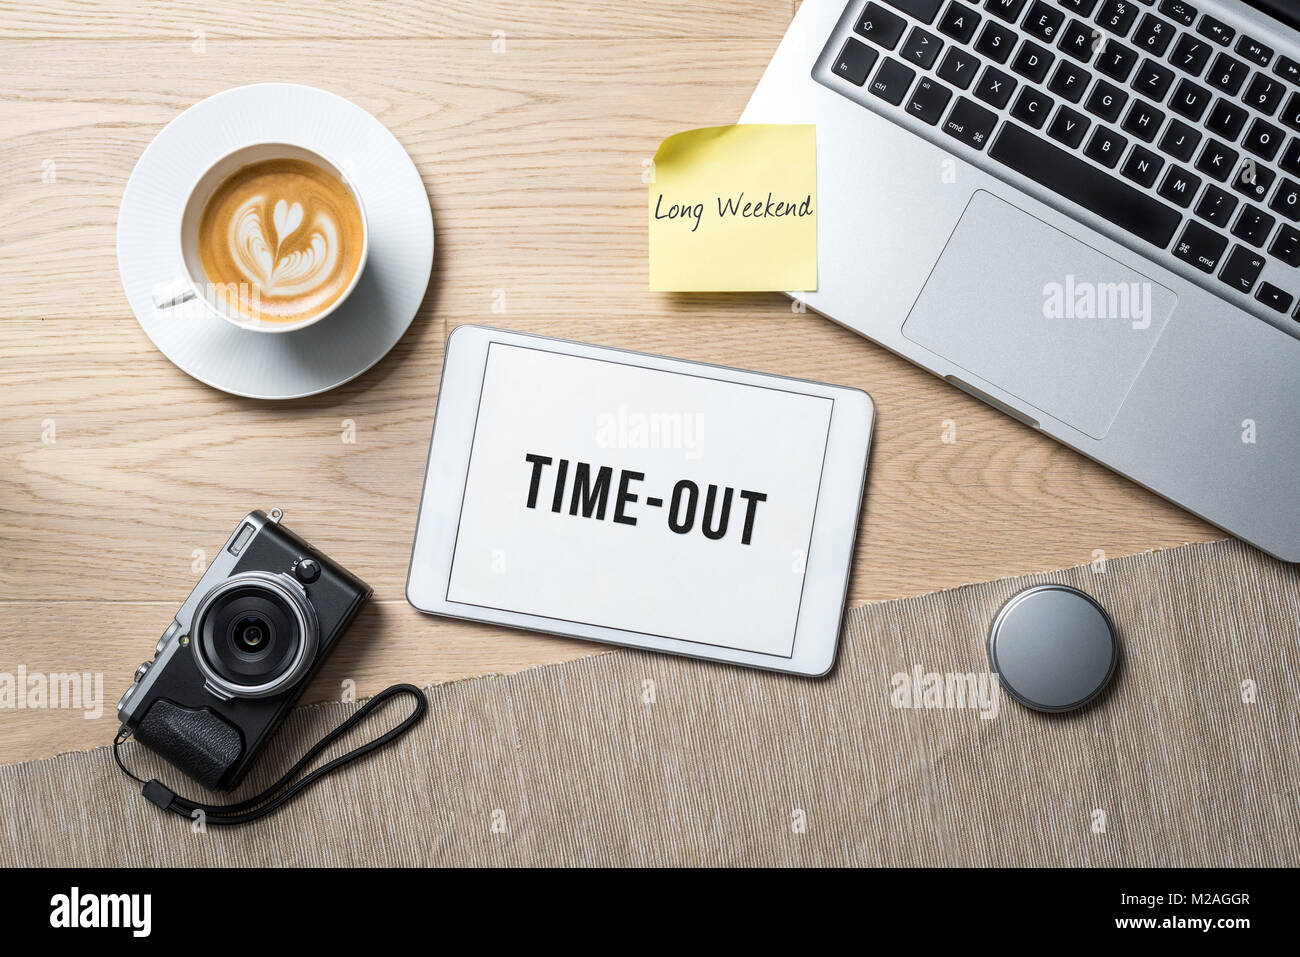 Time-out langes Wochenende Schriften auf Tablet mit Kamera, Kaffeebecher  und Laptop liegt auf Fotografie Büro Schreibtisch als Flach Stockfotografie  - Alamy